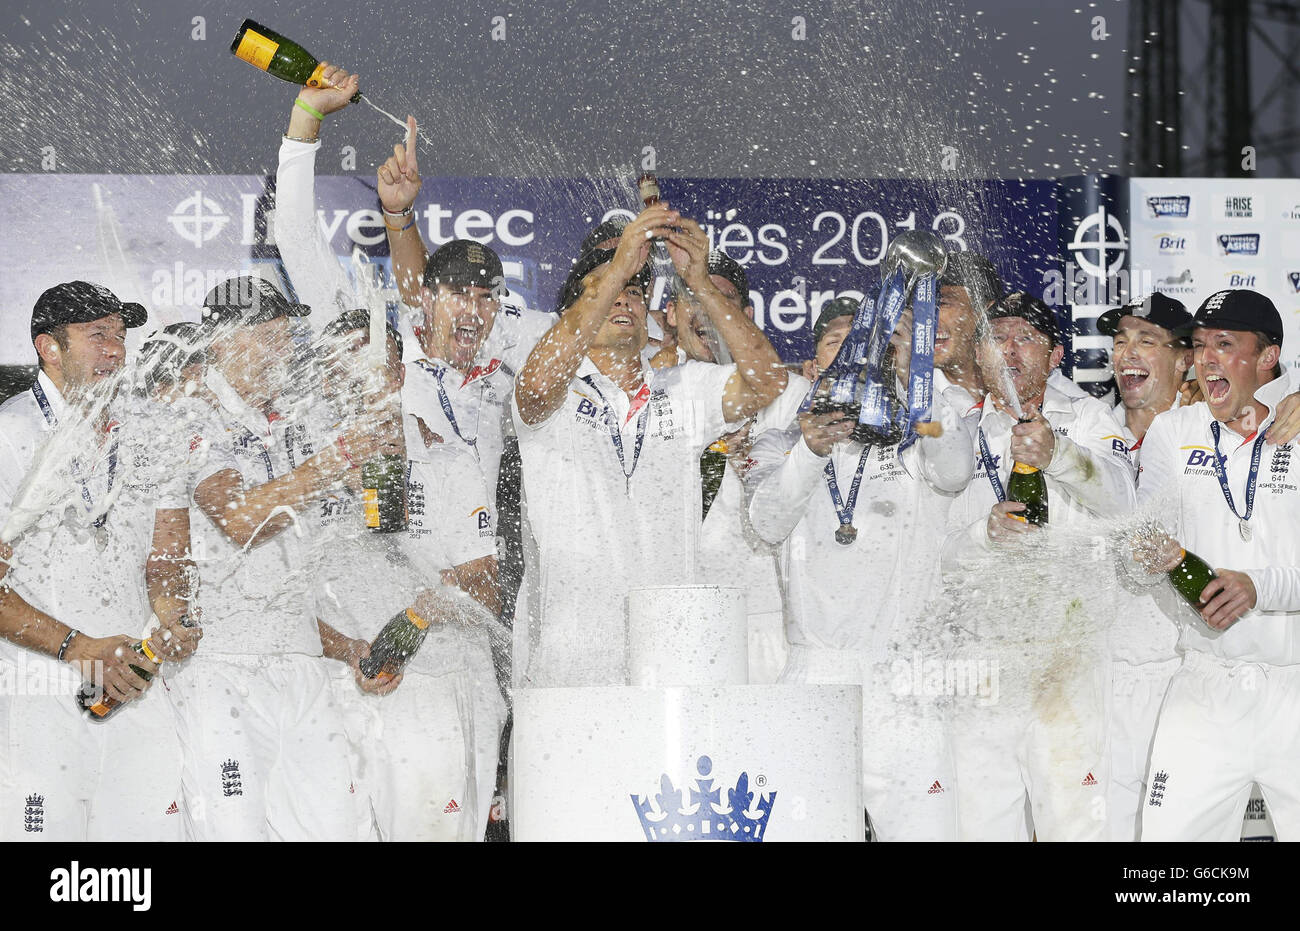 Le capitaine d'Angleterre Alastair Cook, au centre, lève les Ashes Urn lors de la cérémonie de présentation avec le reste de l'équipe pendant le match du cinquième jour du cinquième test de cricket Ashes contre l'Australie au terrain de cricket ovale de Londres, le dimanche 25 août 2013.(AP photo/Alastair Grant) Banque D'Images